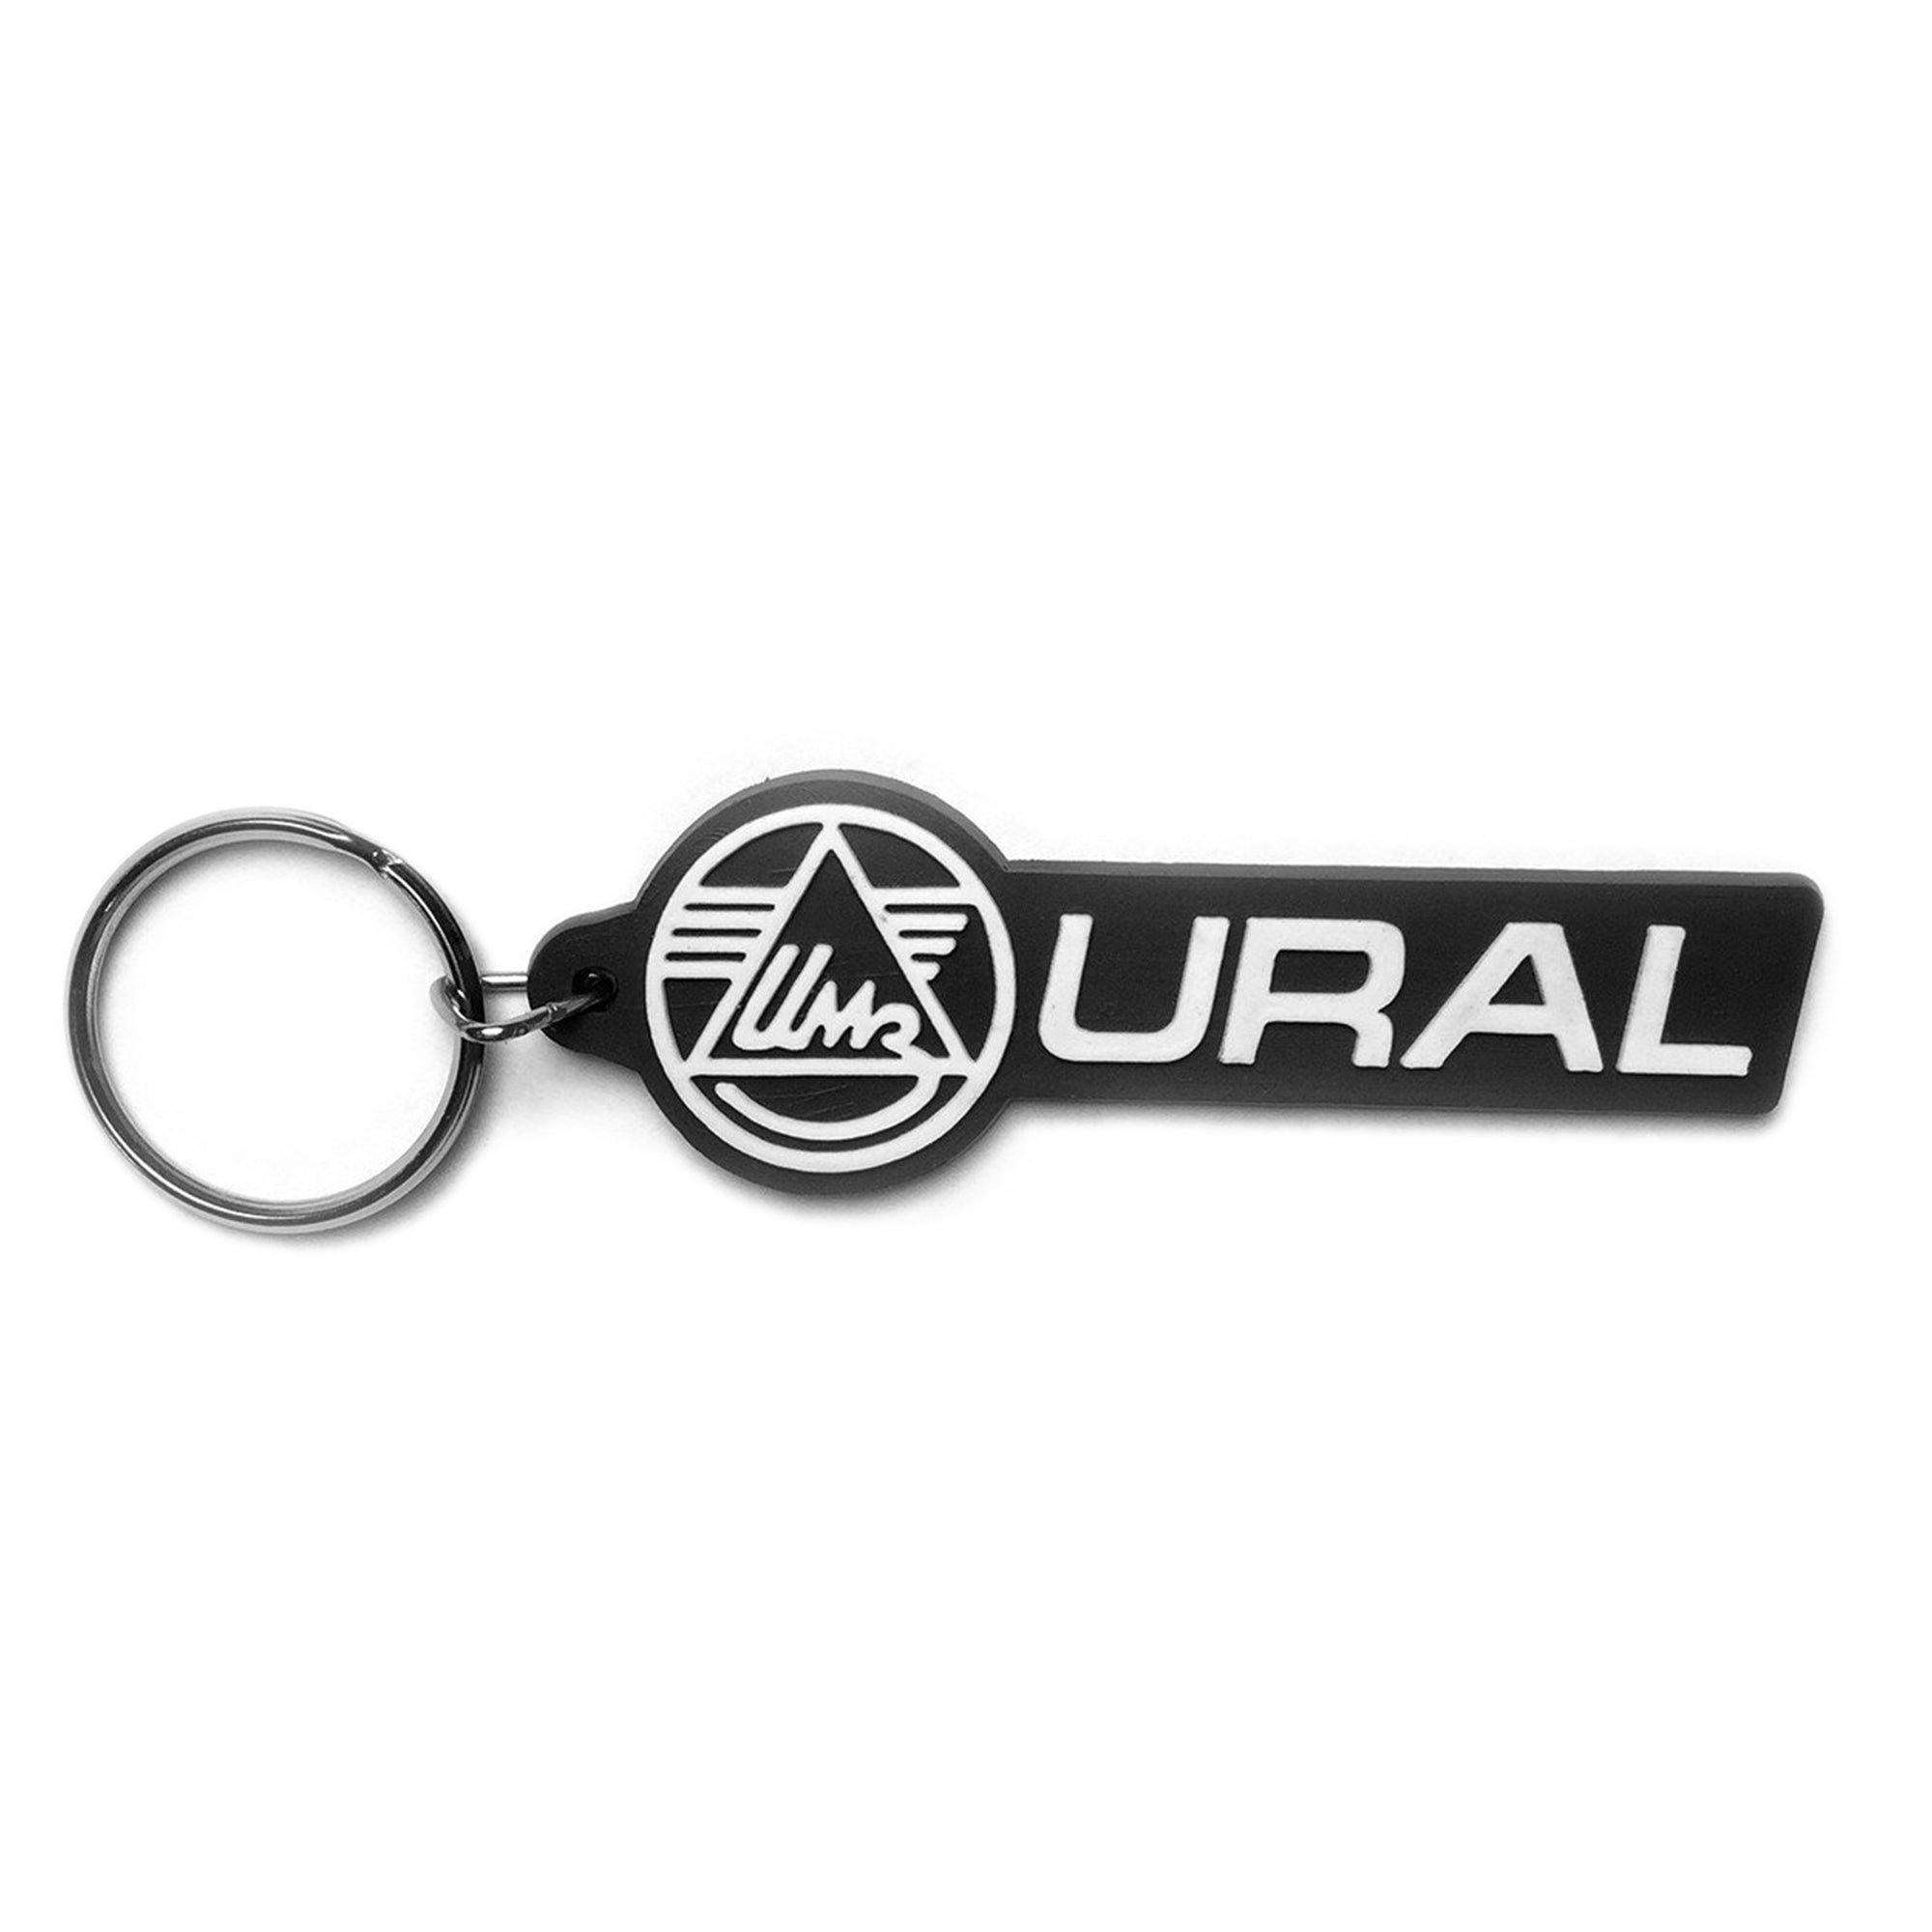 Ural Keychain